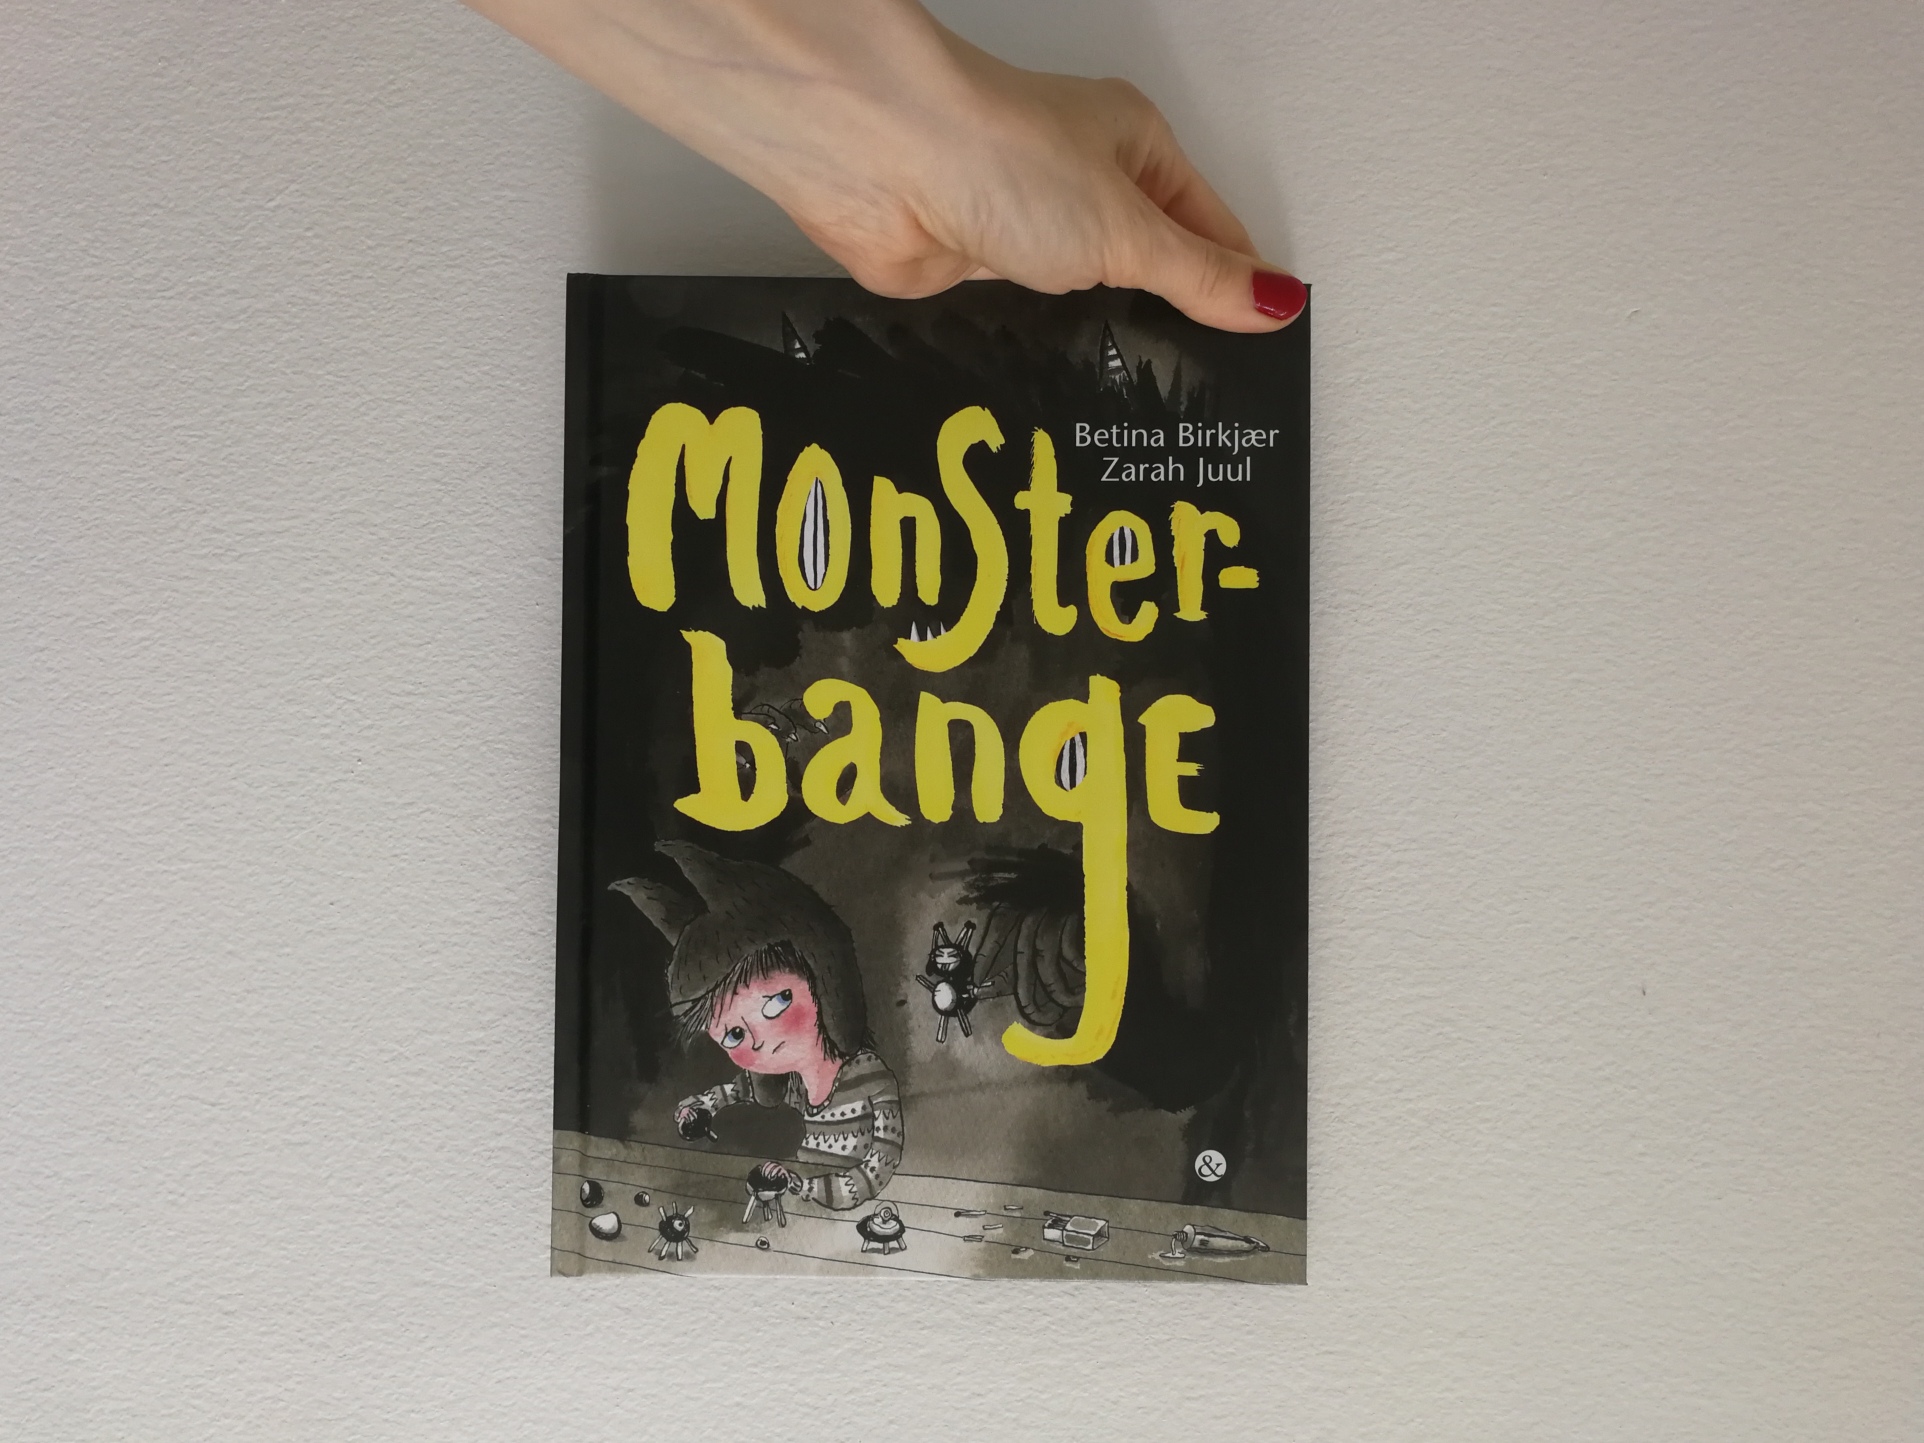 monsterbange billedbog børnebog